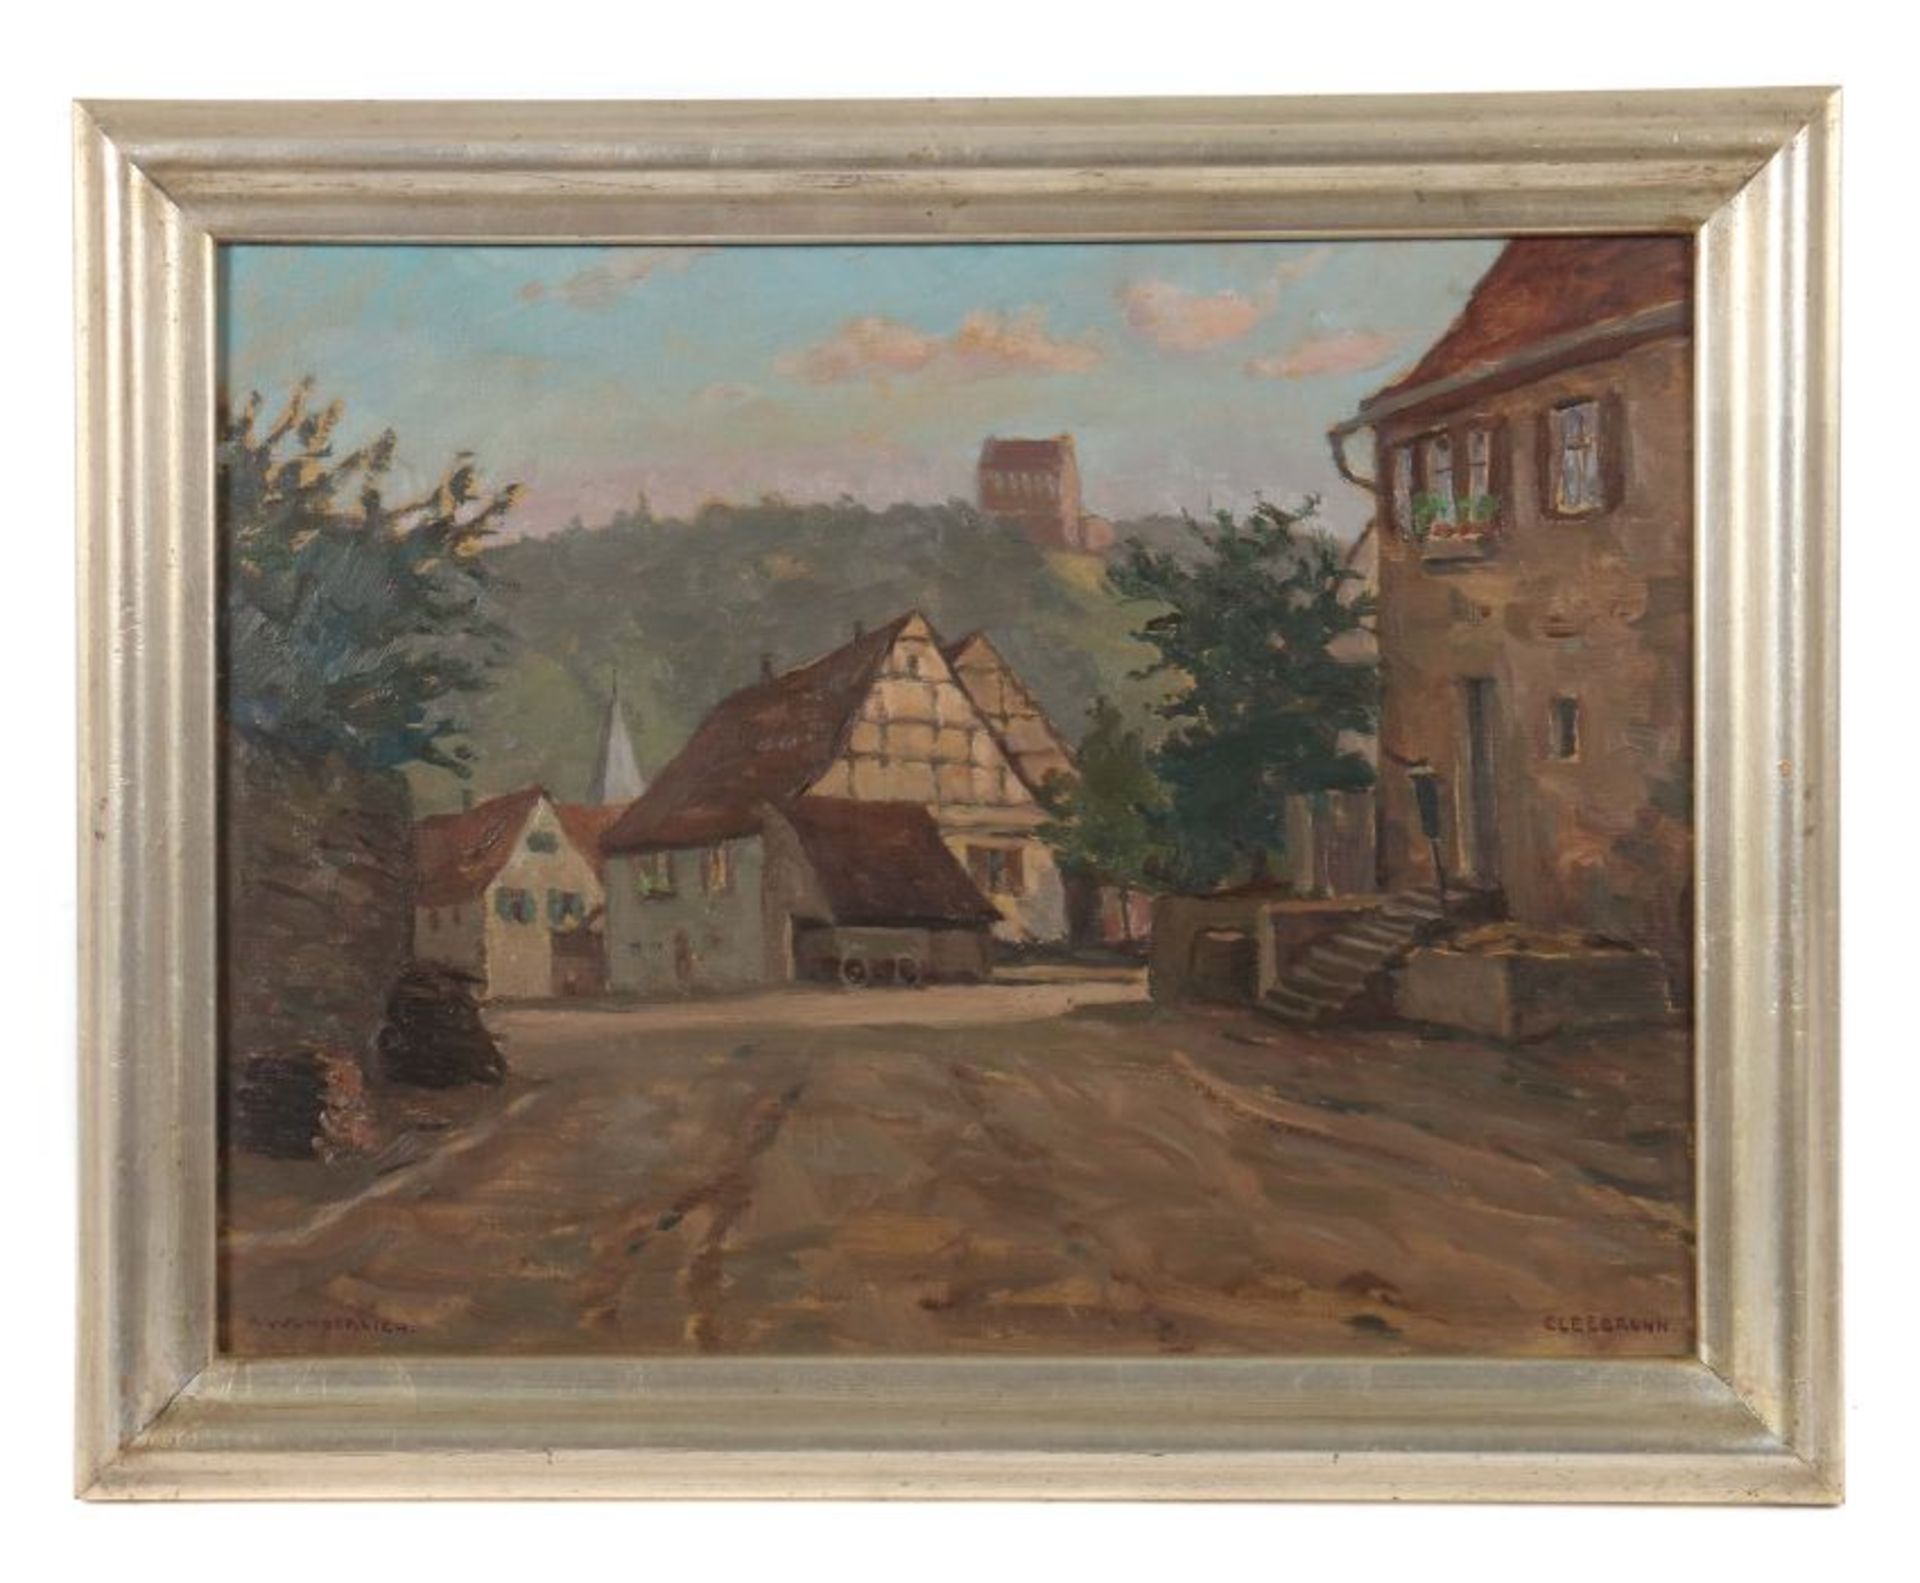 Wunderlich, Albert 1876 - 1949, war Maler in Stuttgart. "Cleebronn", eine Dorfstraße, unten links - Bild 2 aus 3